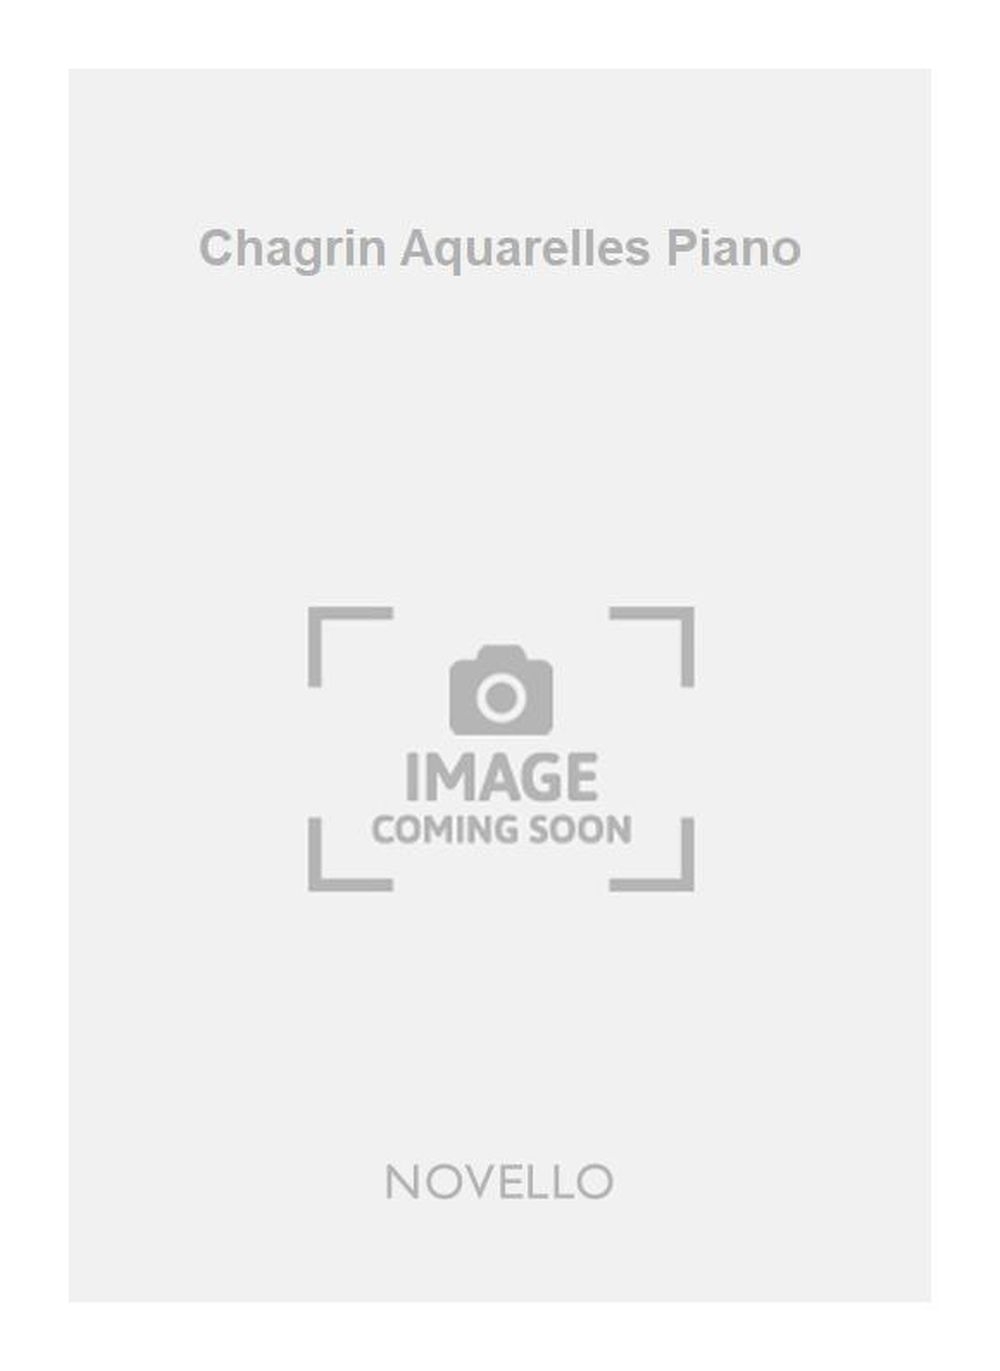 Francis Chagrin: Chagrin Aquarelles Piano